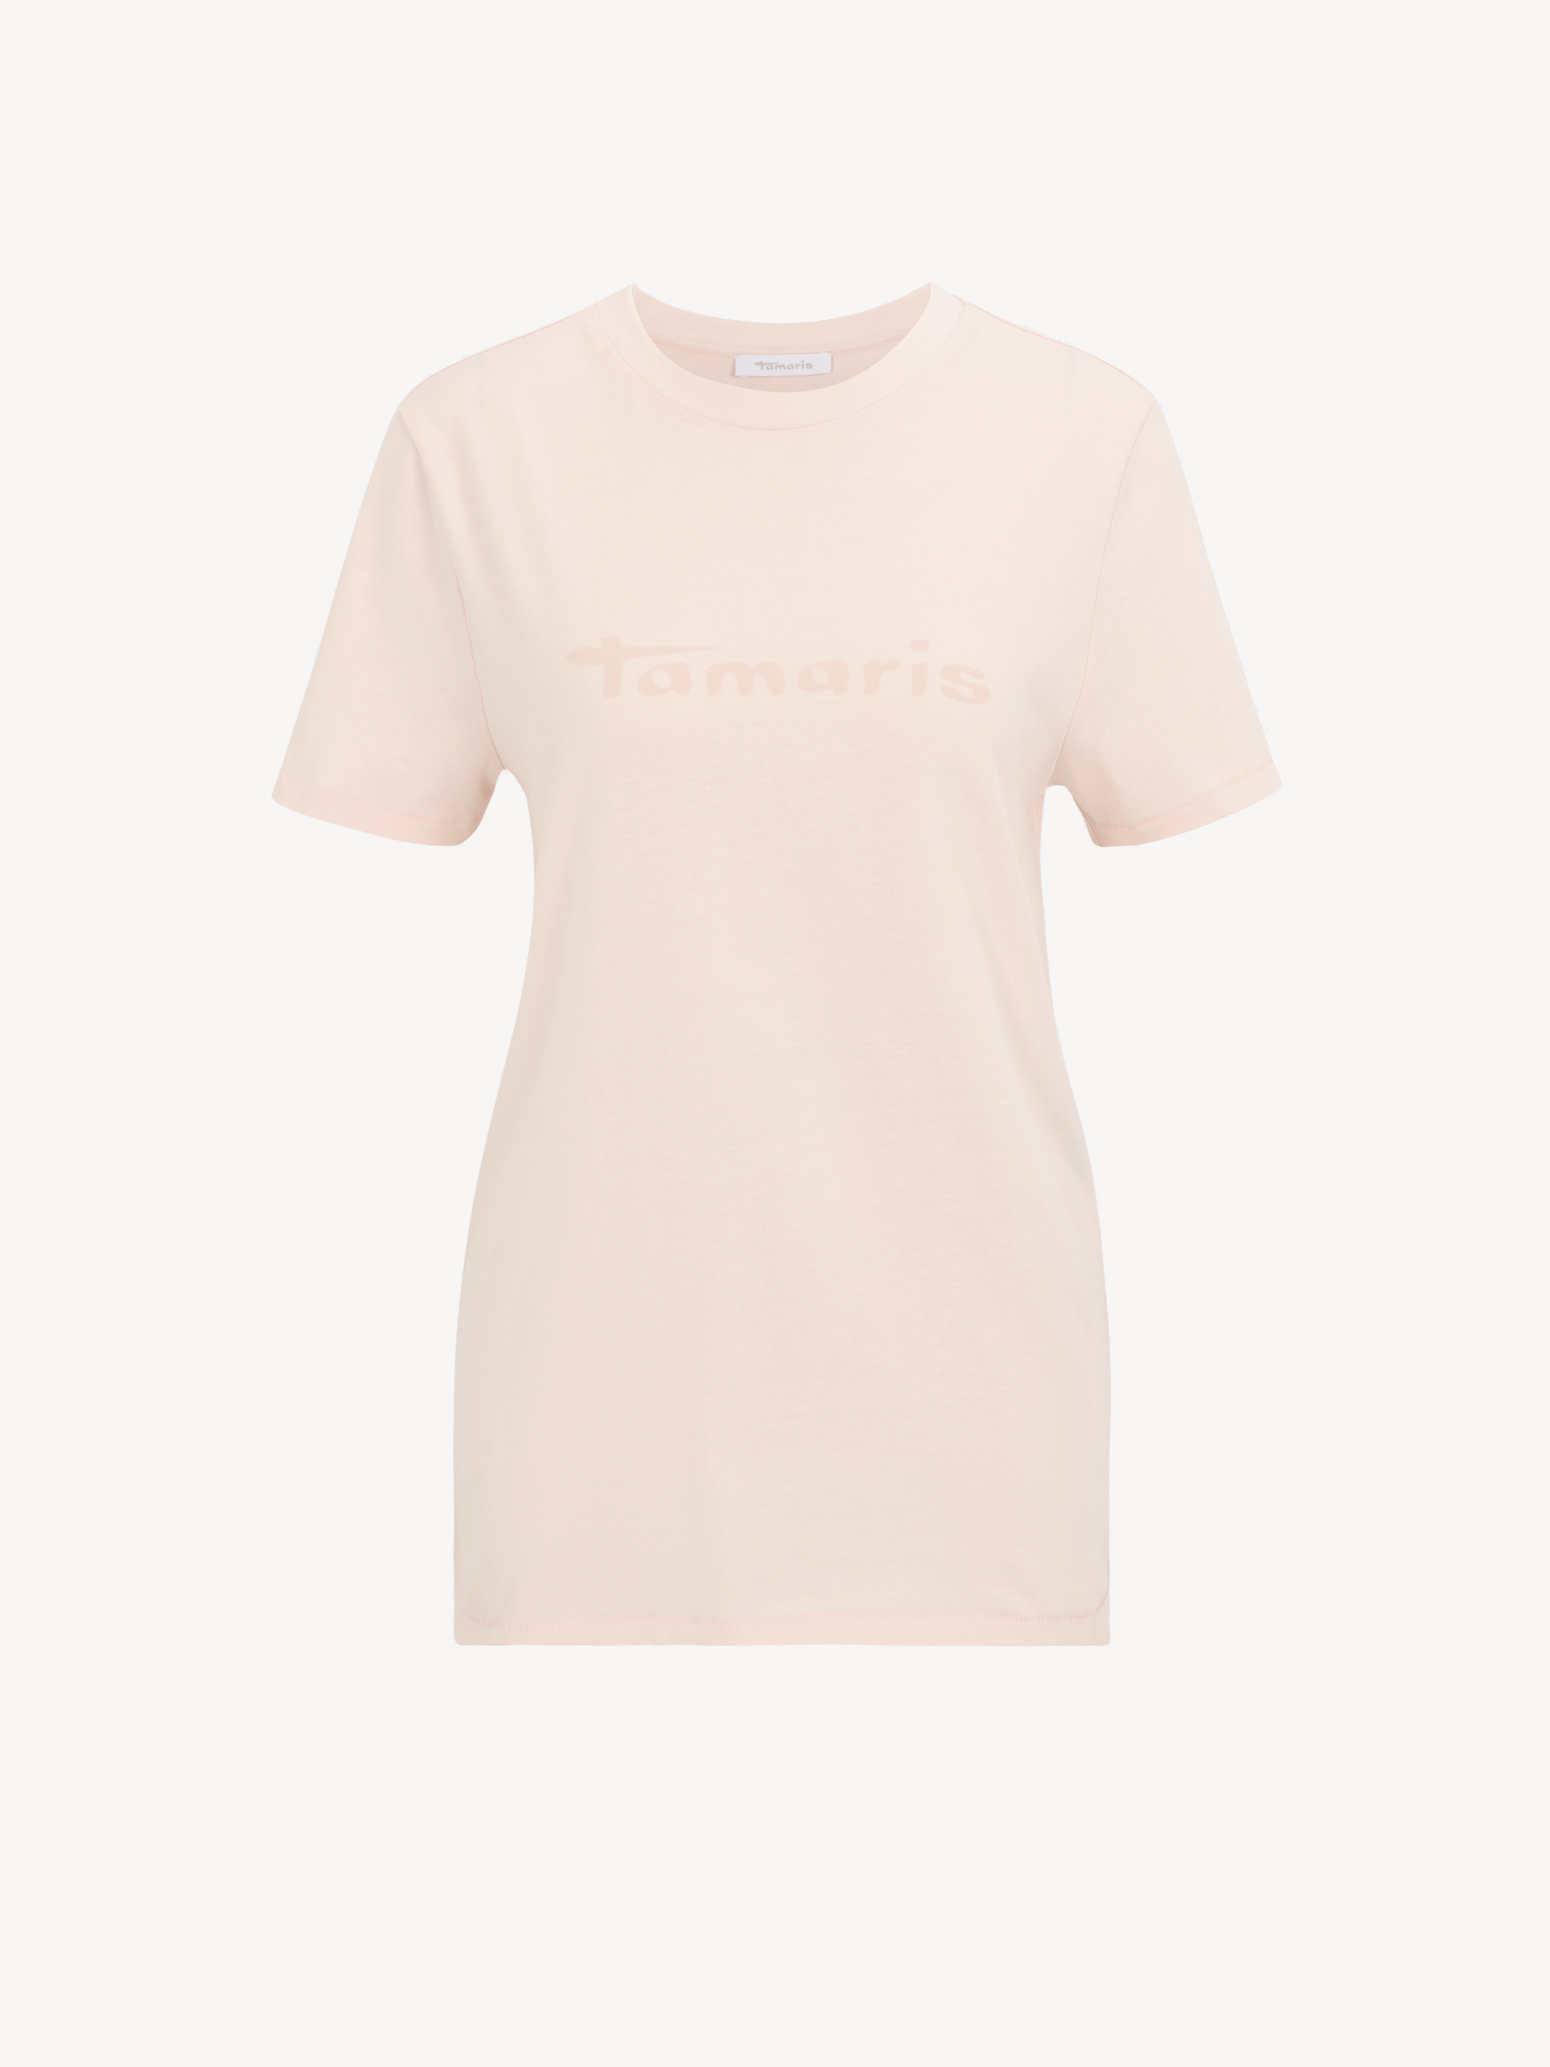 Buy Tamaris Tops now! Shirts online 